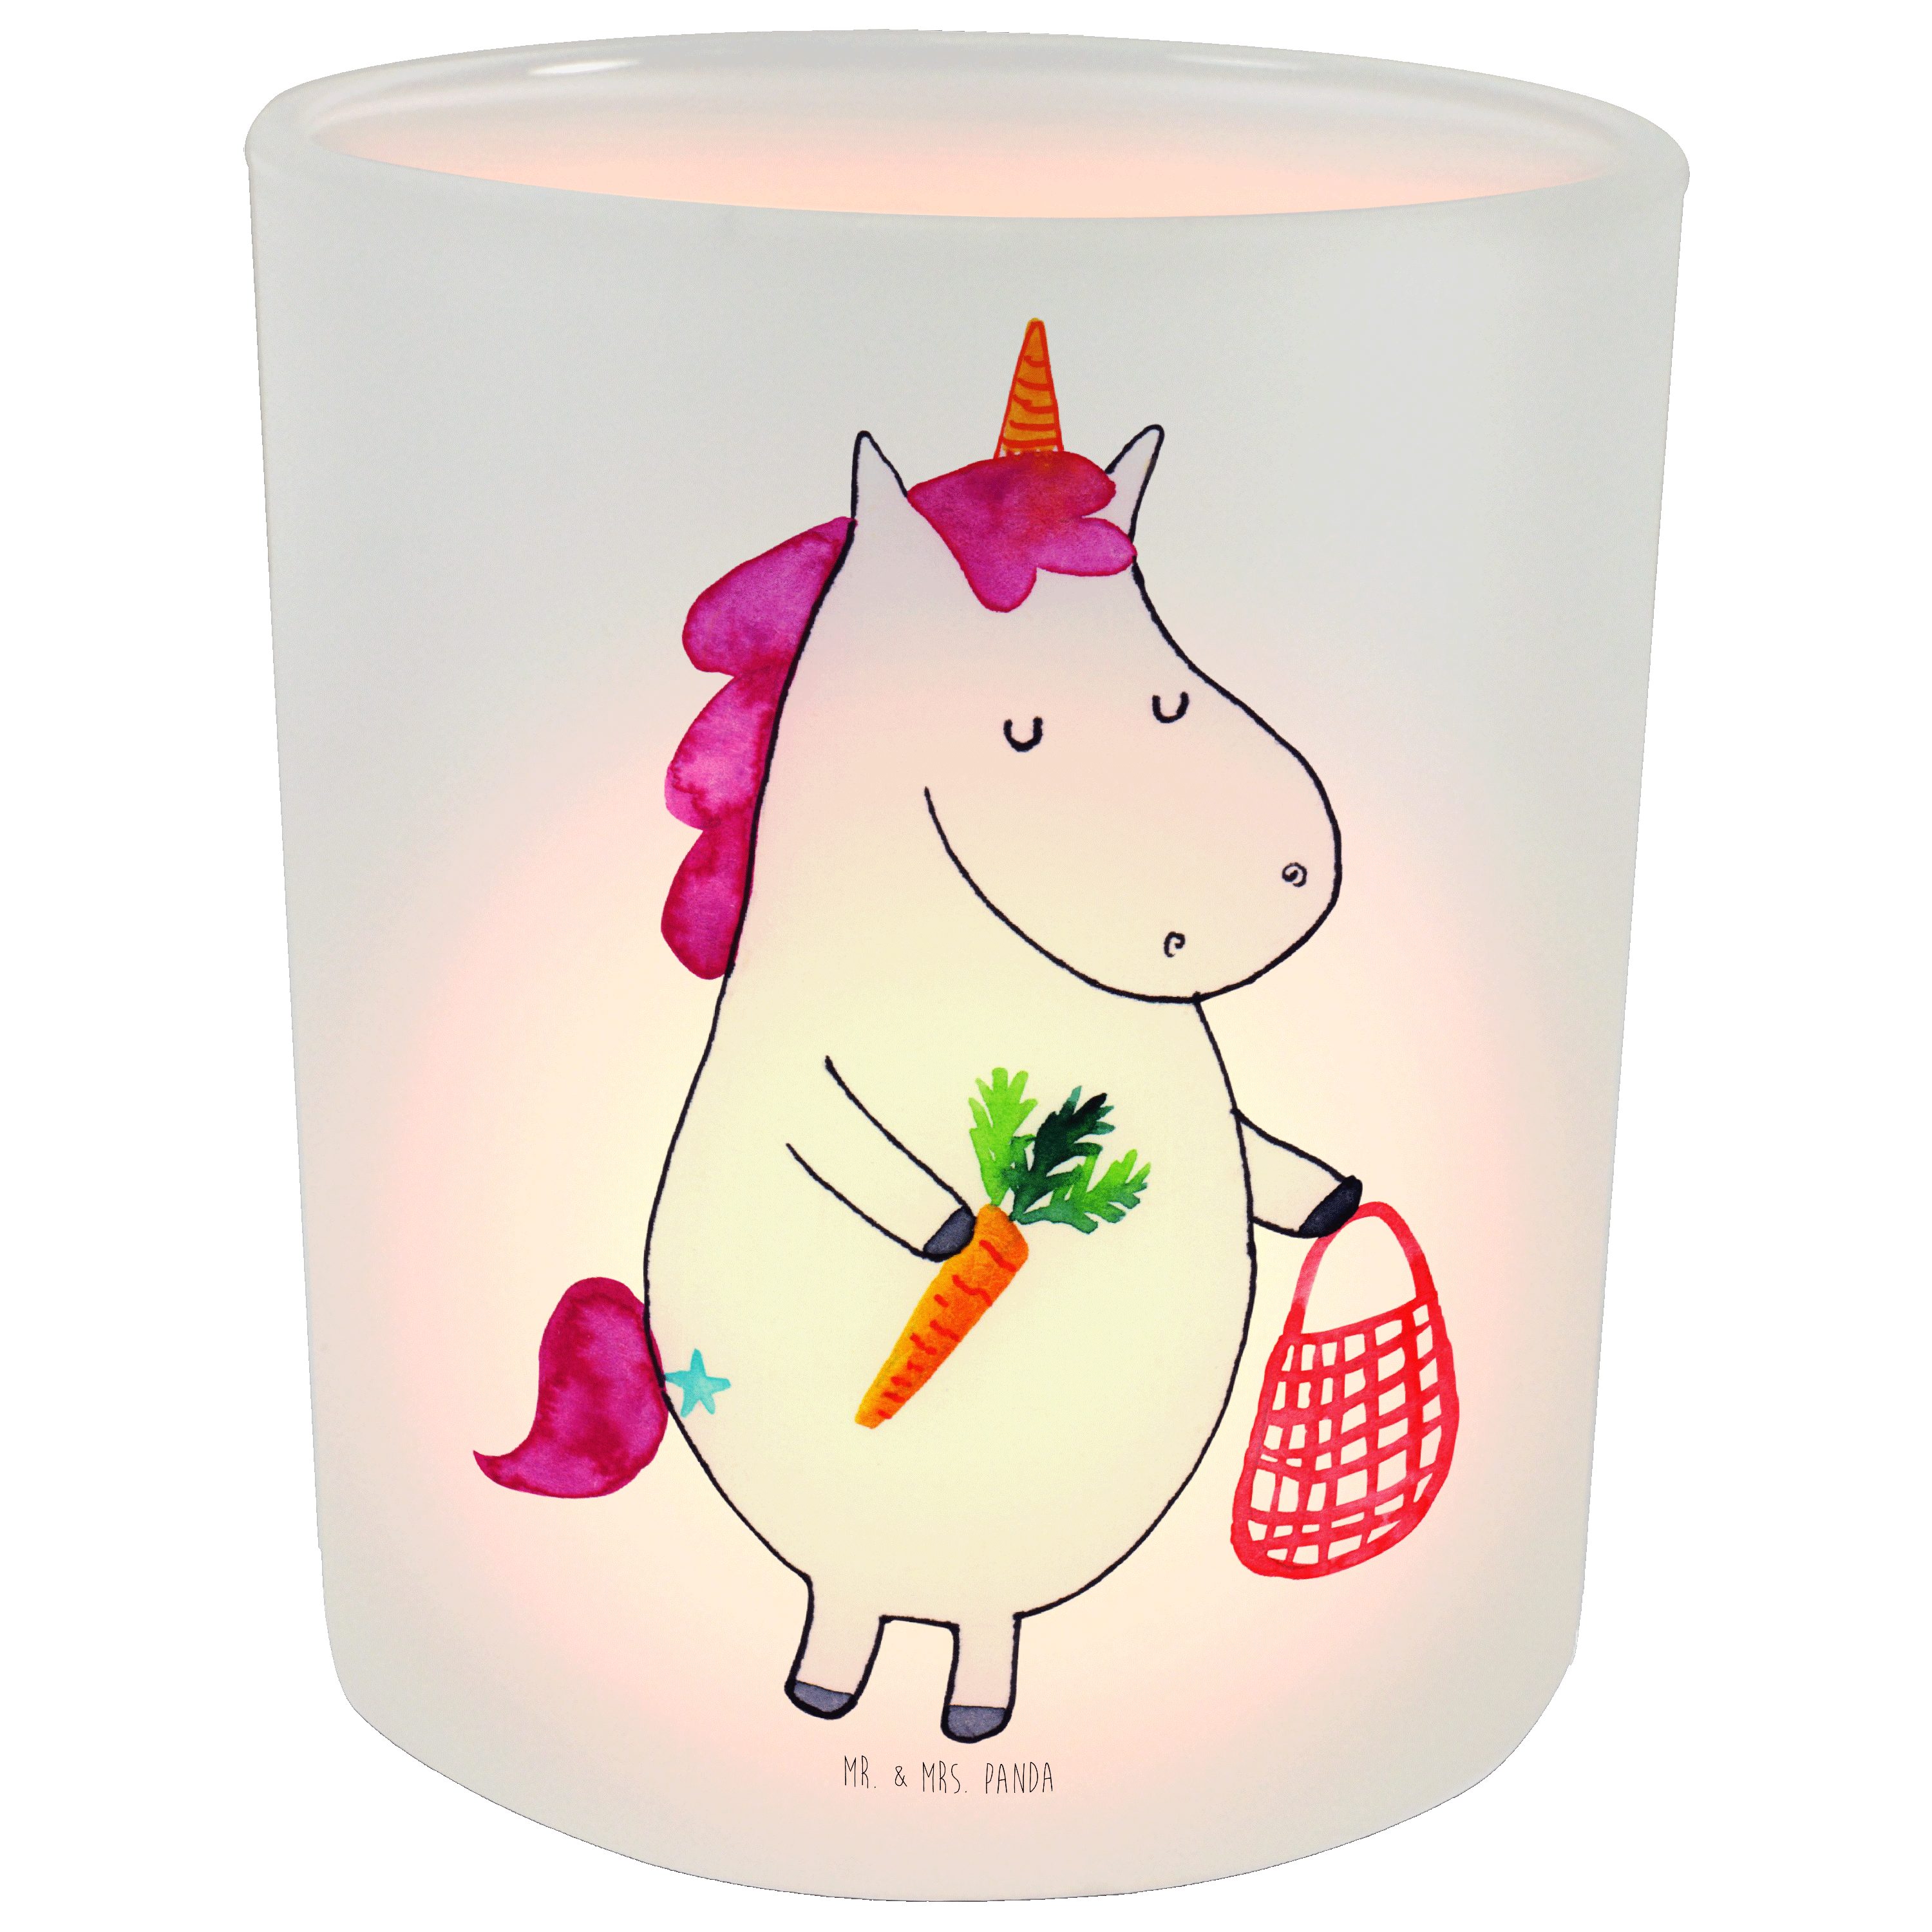 Mr. & Mrs. Panda Windlicht - Geschenk, Teelichthalter, Teelichtglas, Einhorn Transparent St) - Vegan (1